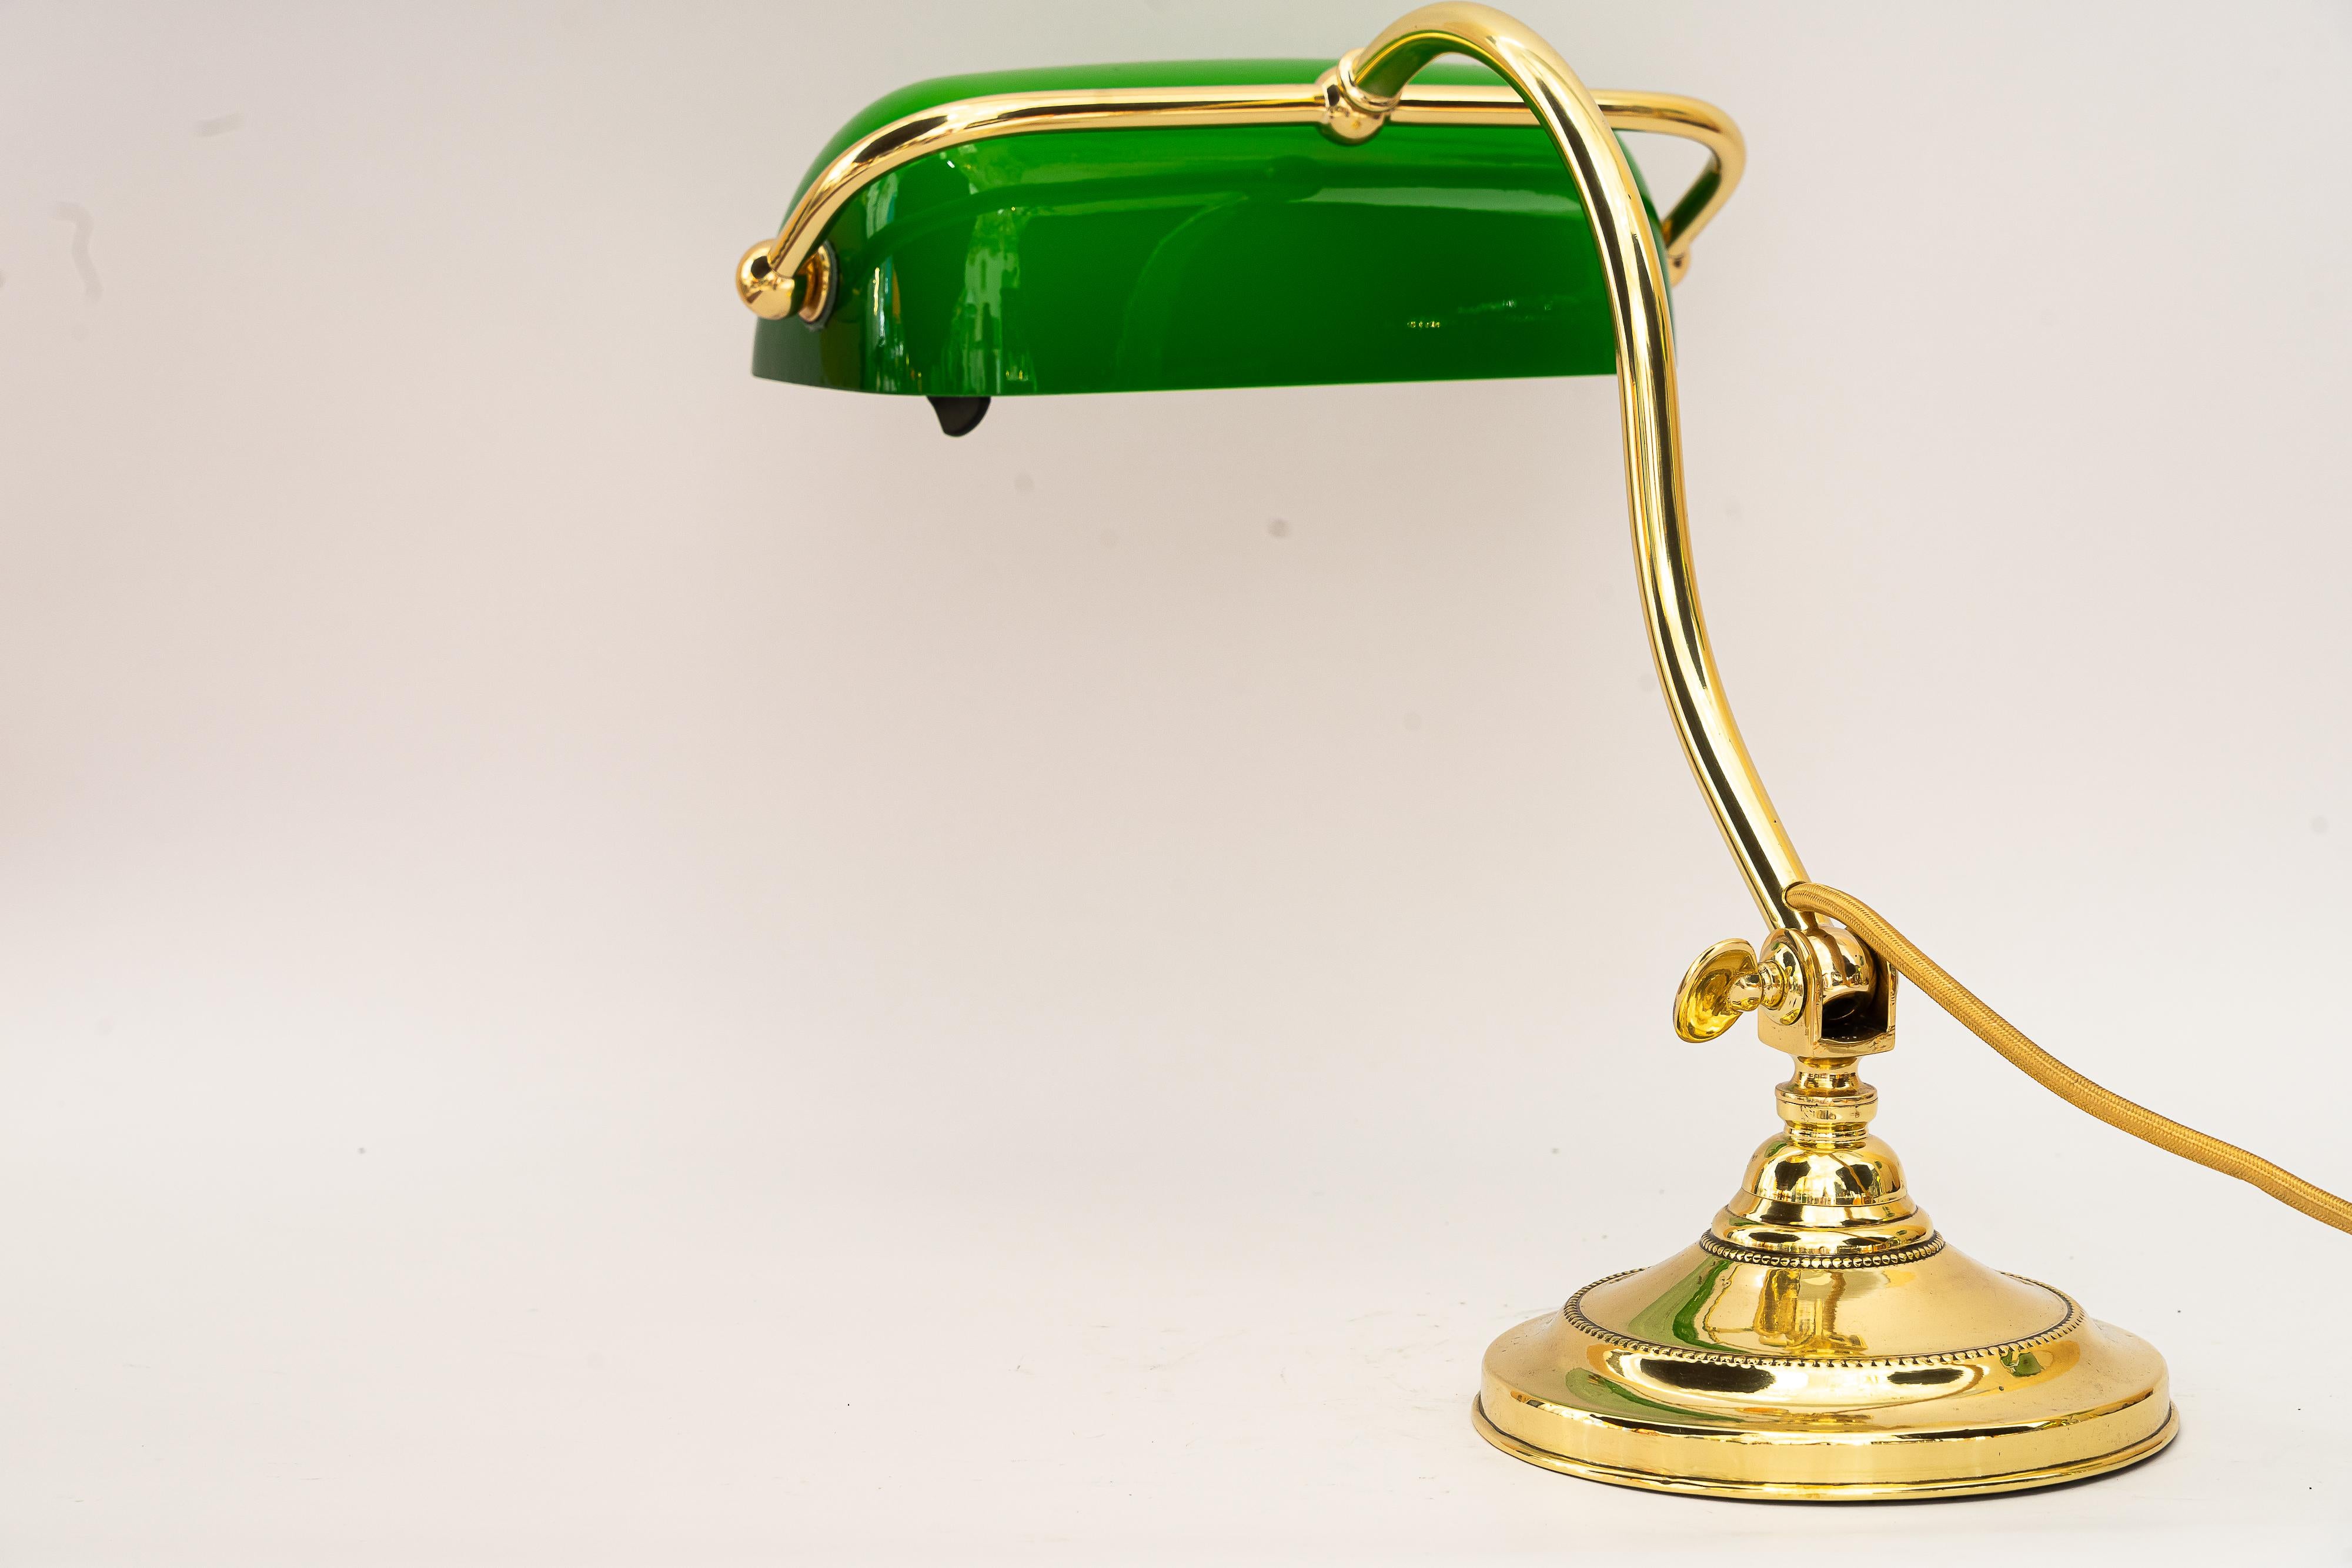 Art Deco Adjustable Banker lamp around 1920s